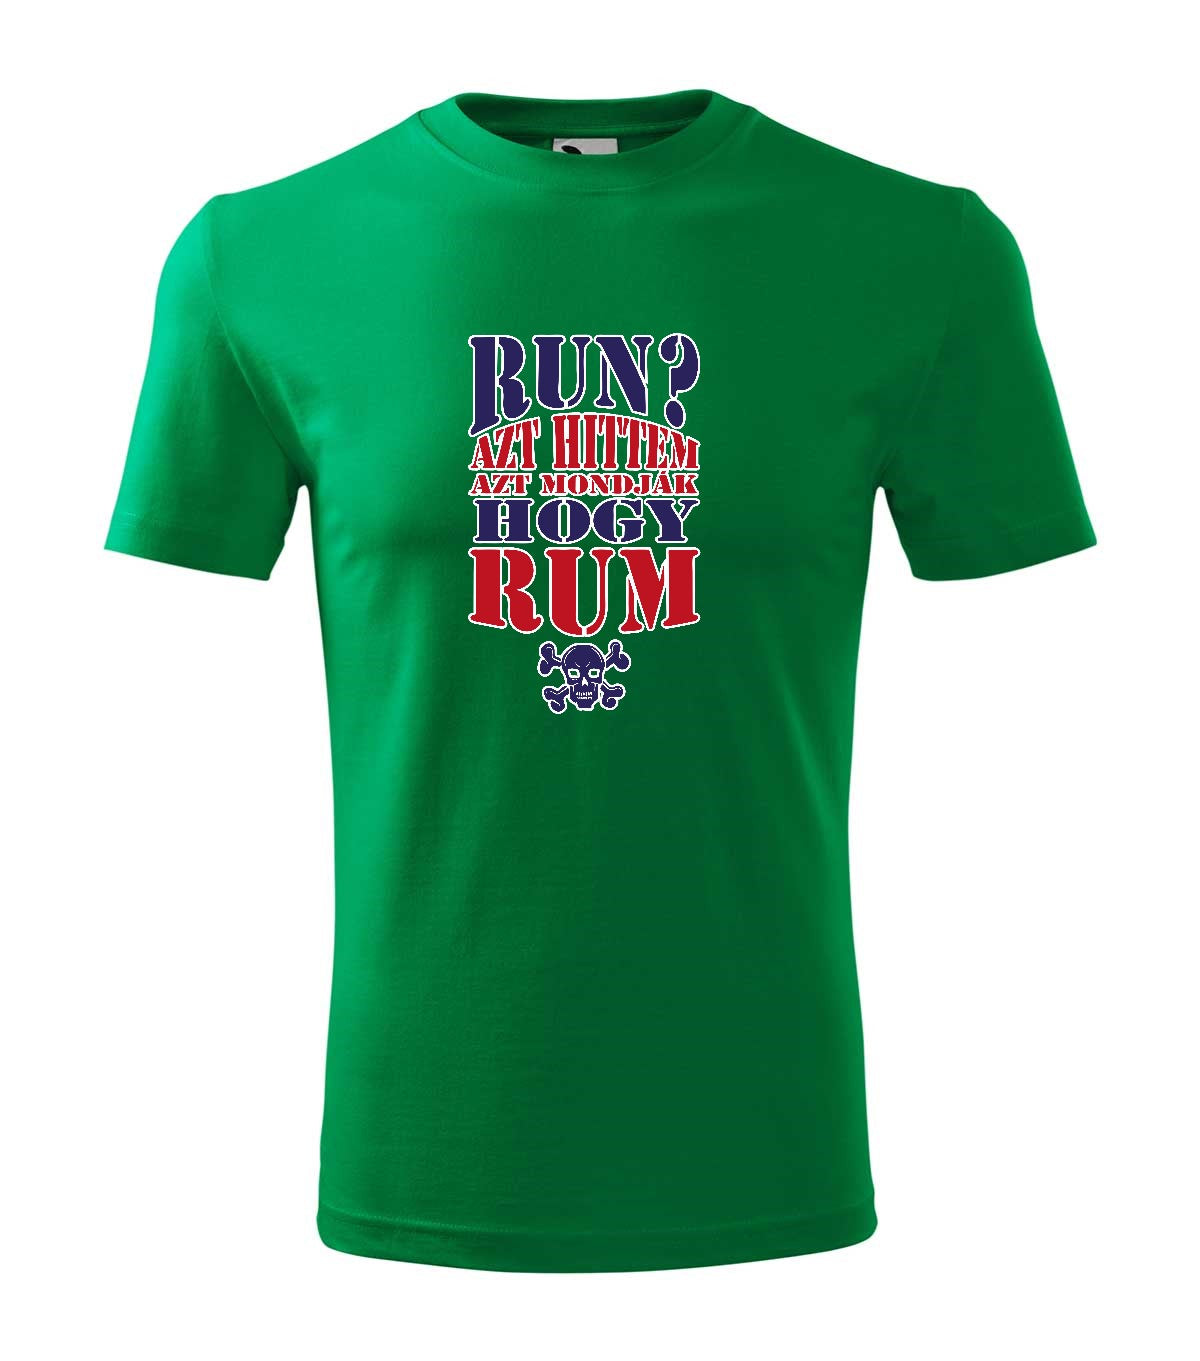 Run Rum gyerek technikai póló